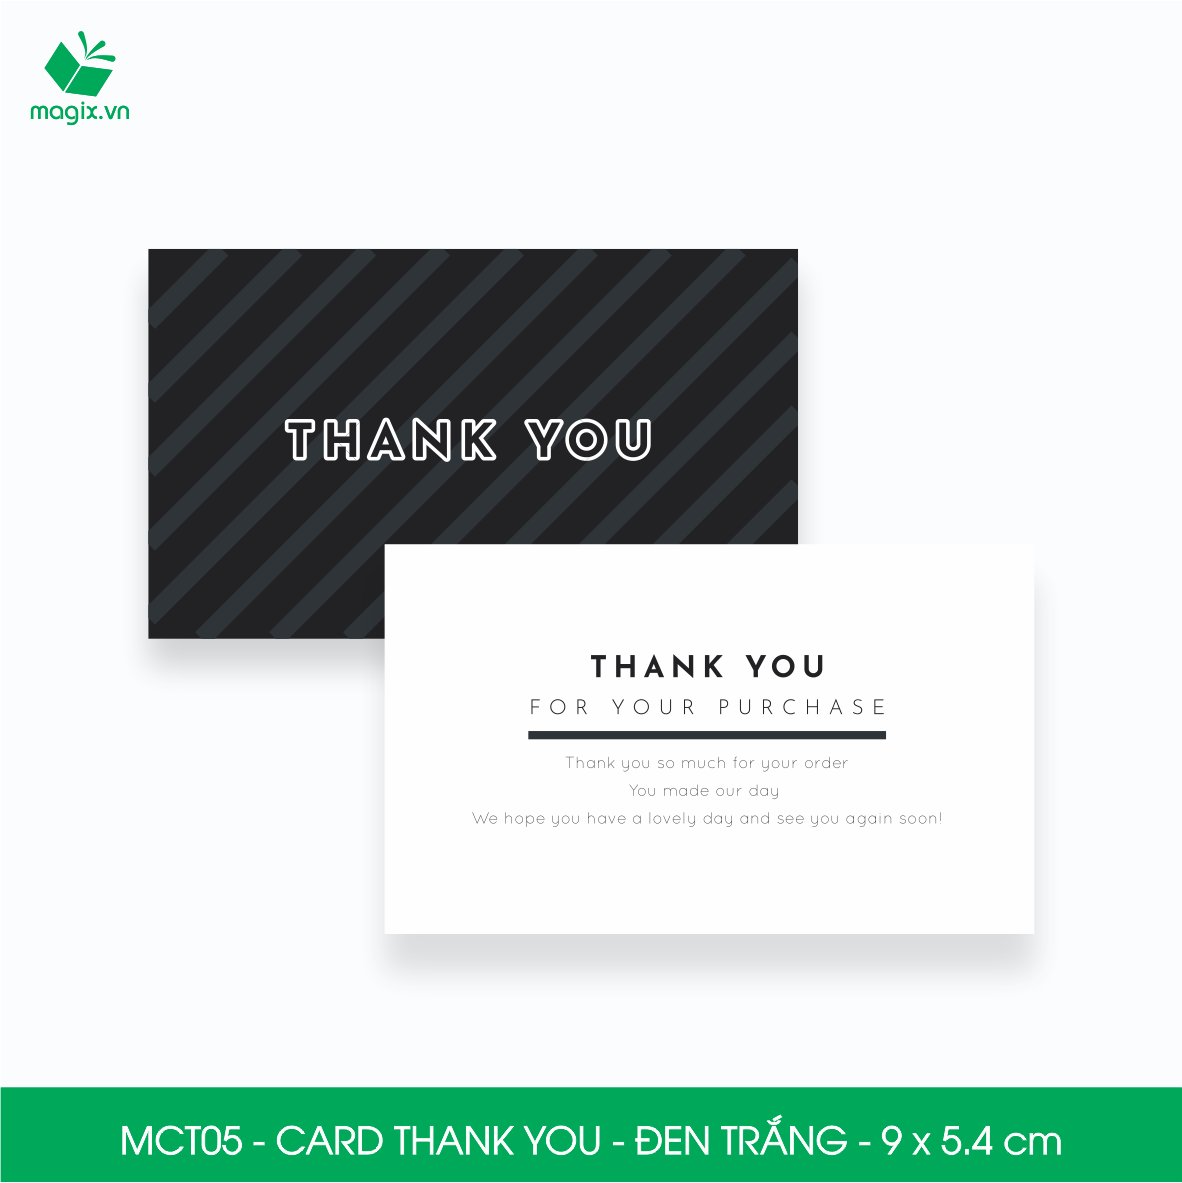 MCT05 - 9x5.4 cm - 1000 Card Thank you, Thiệp cảm ơn khách hàng, card cám ơn cứng cáp sang trọng